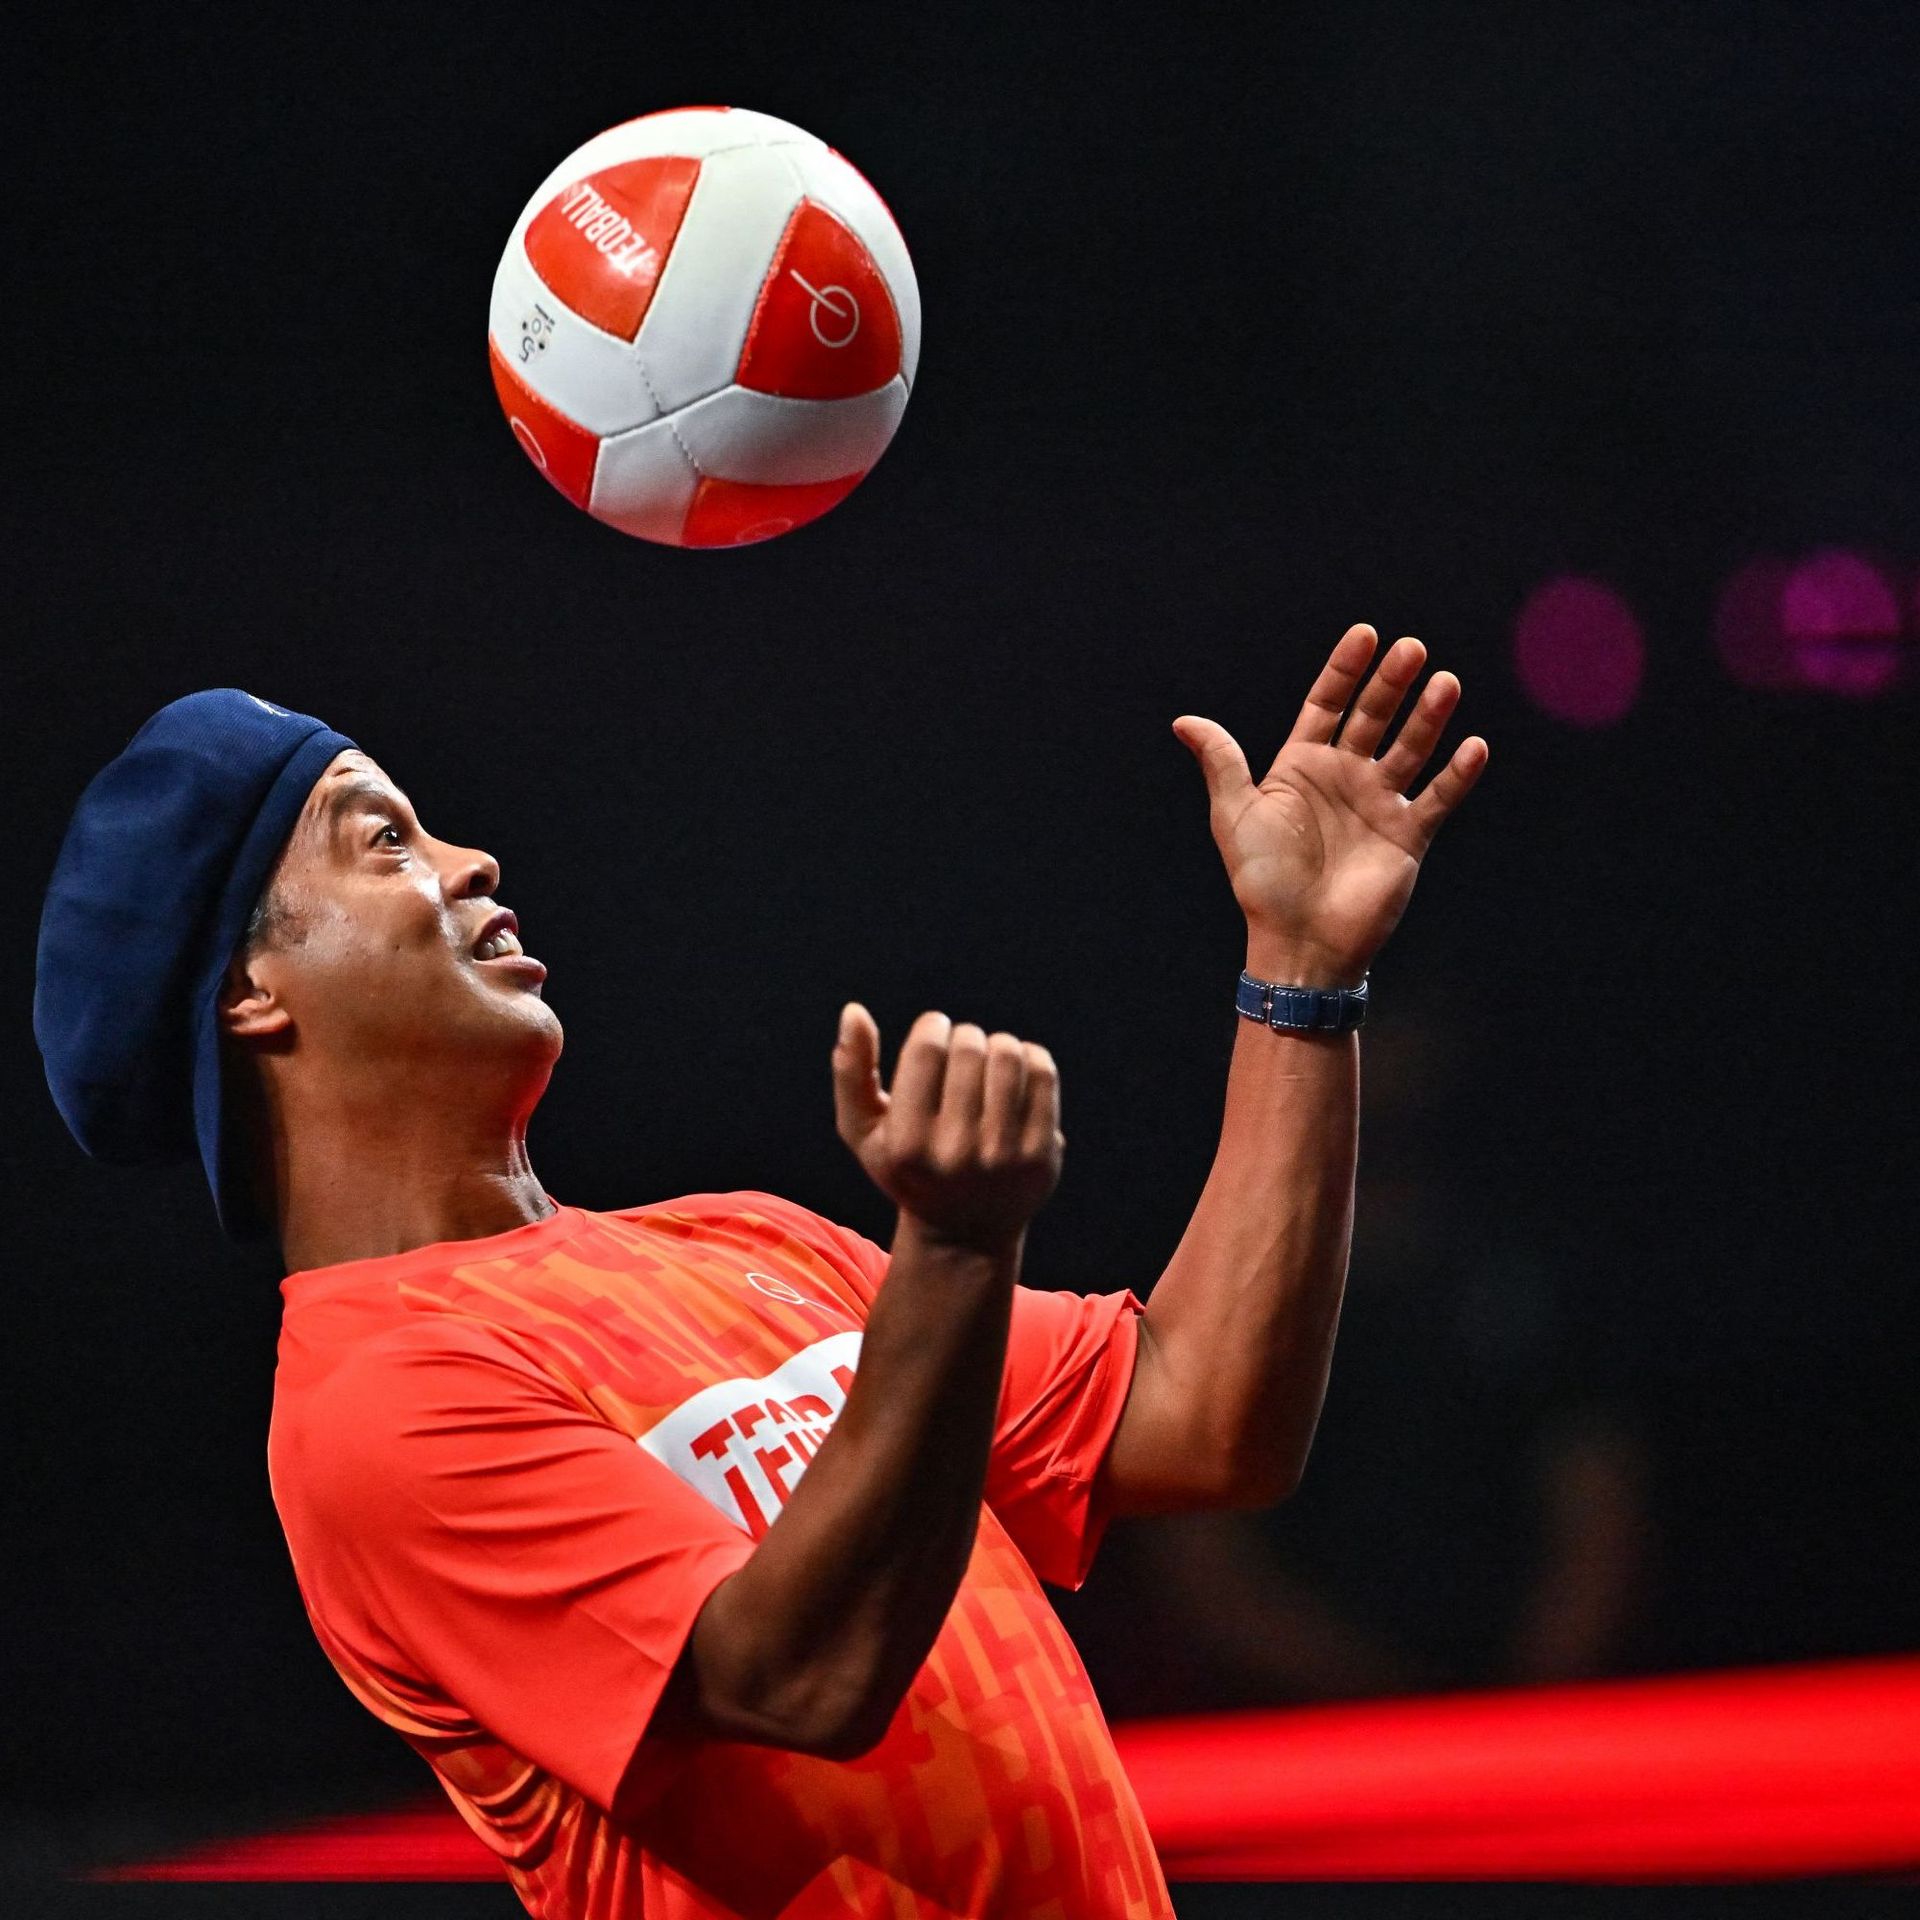 L1 : Ronaldinho voudrait voir Mbappé gagner le Ballon d'or avec le Paris SG